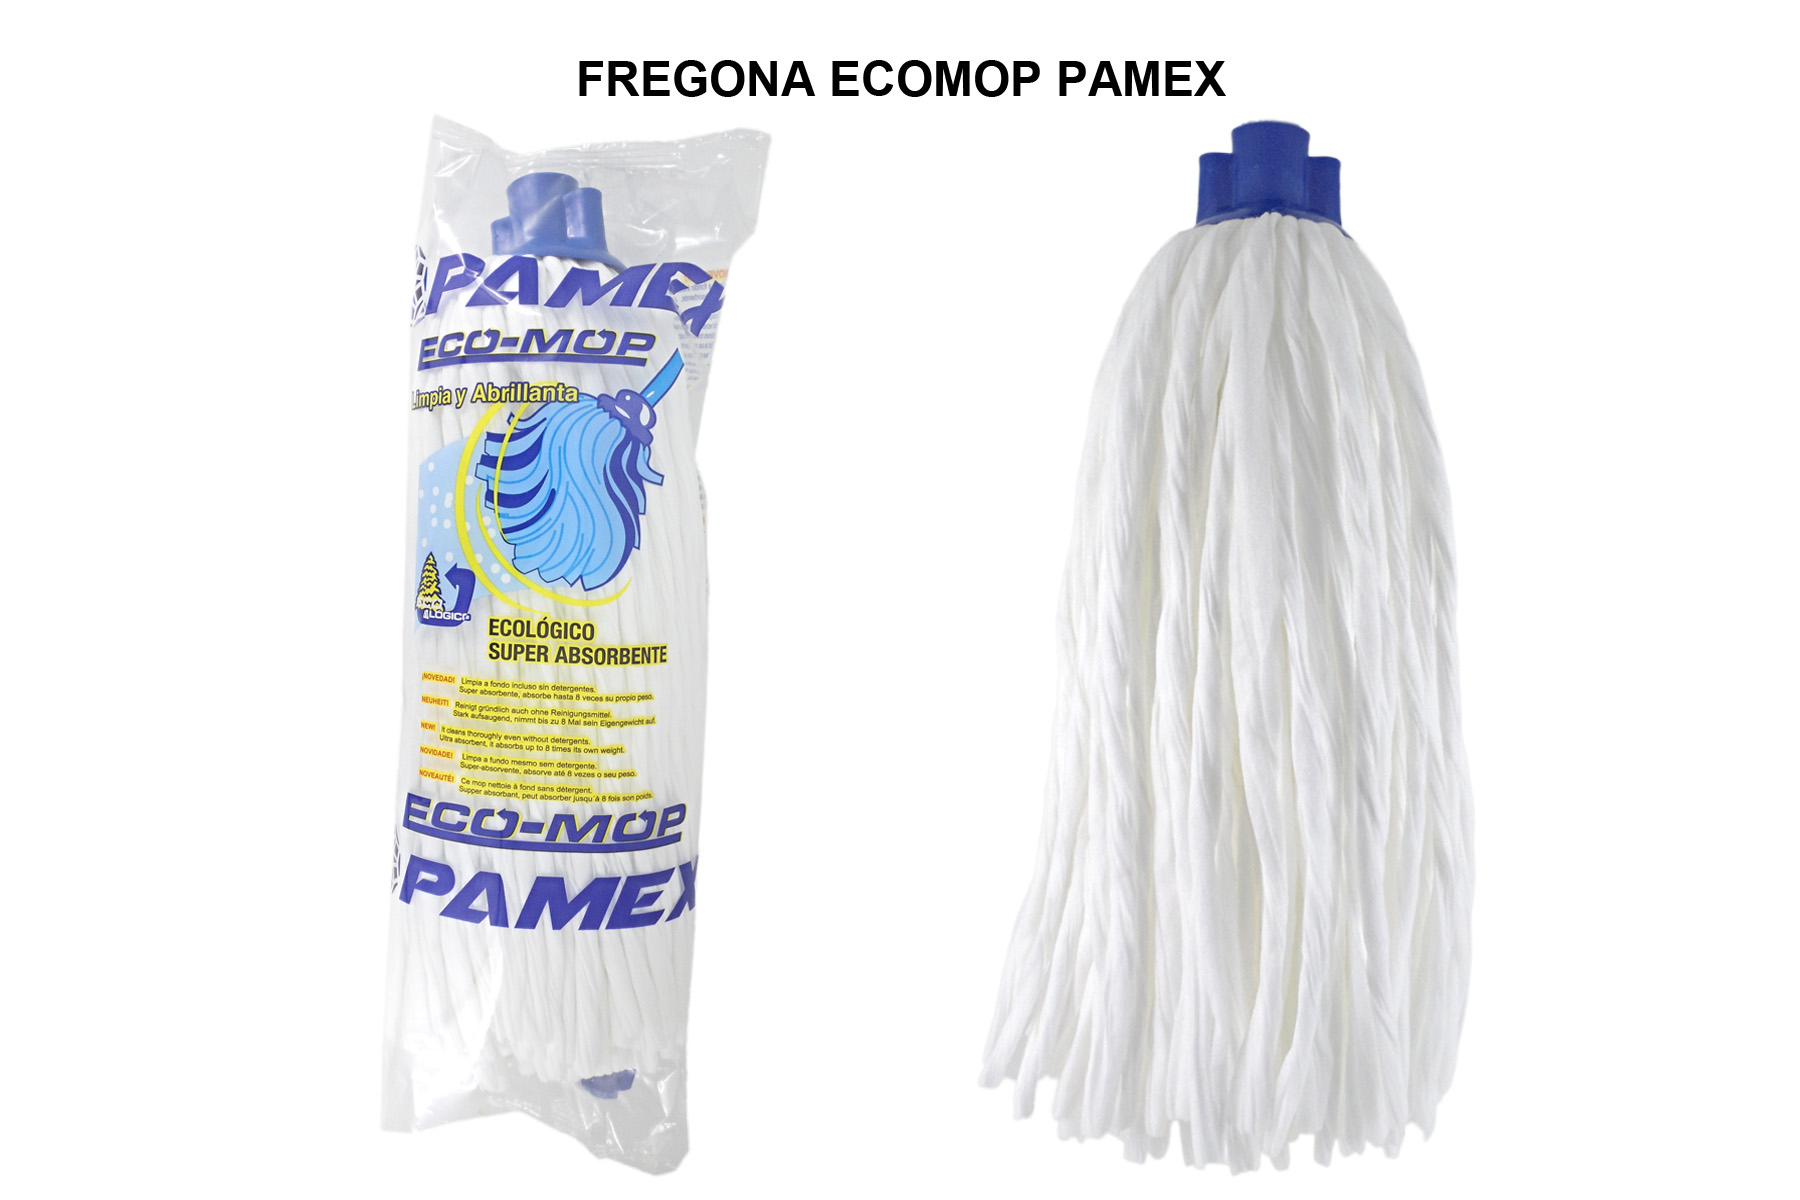 FREGONA ECOMOP PAMEX